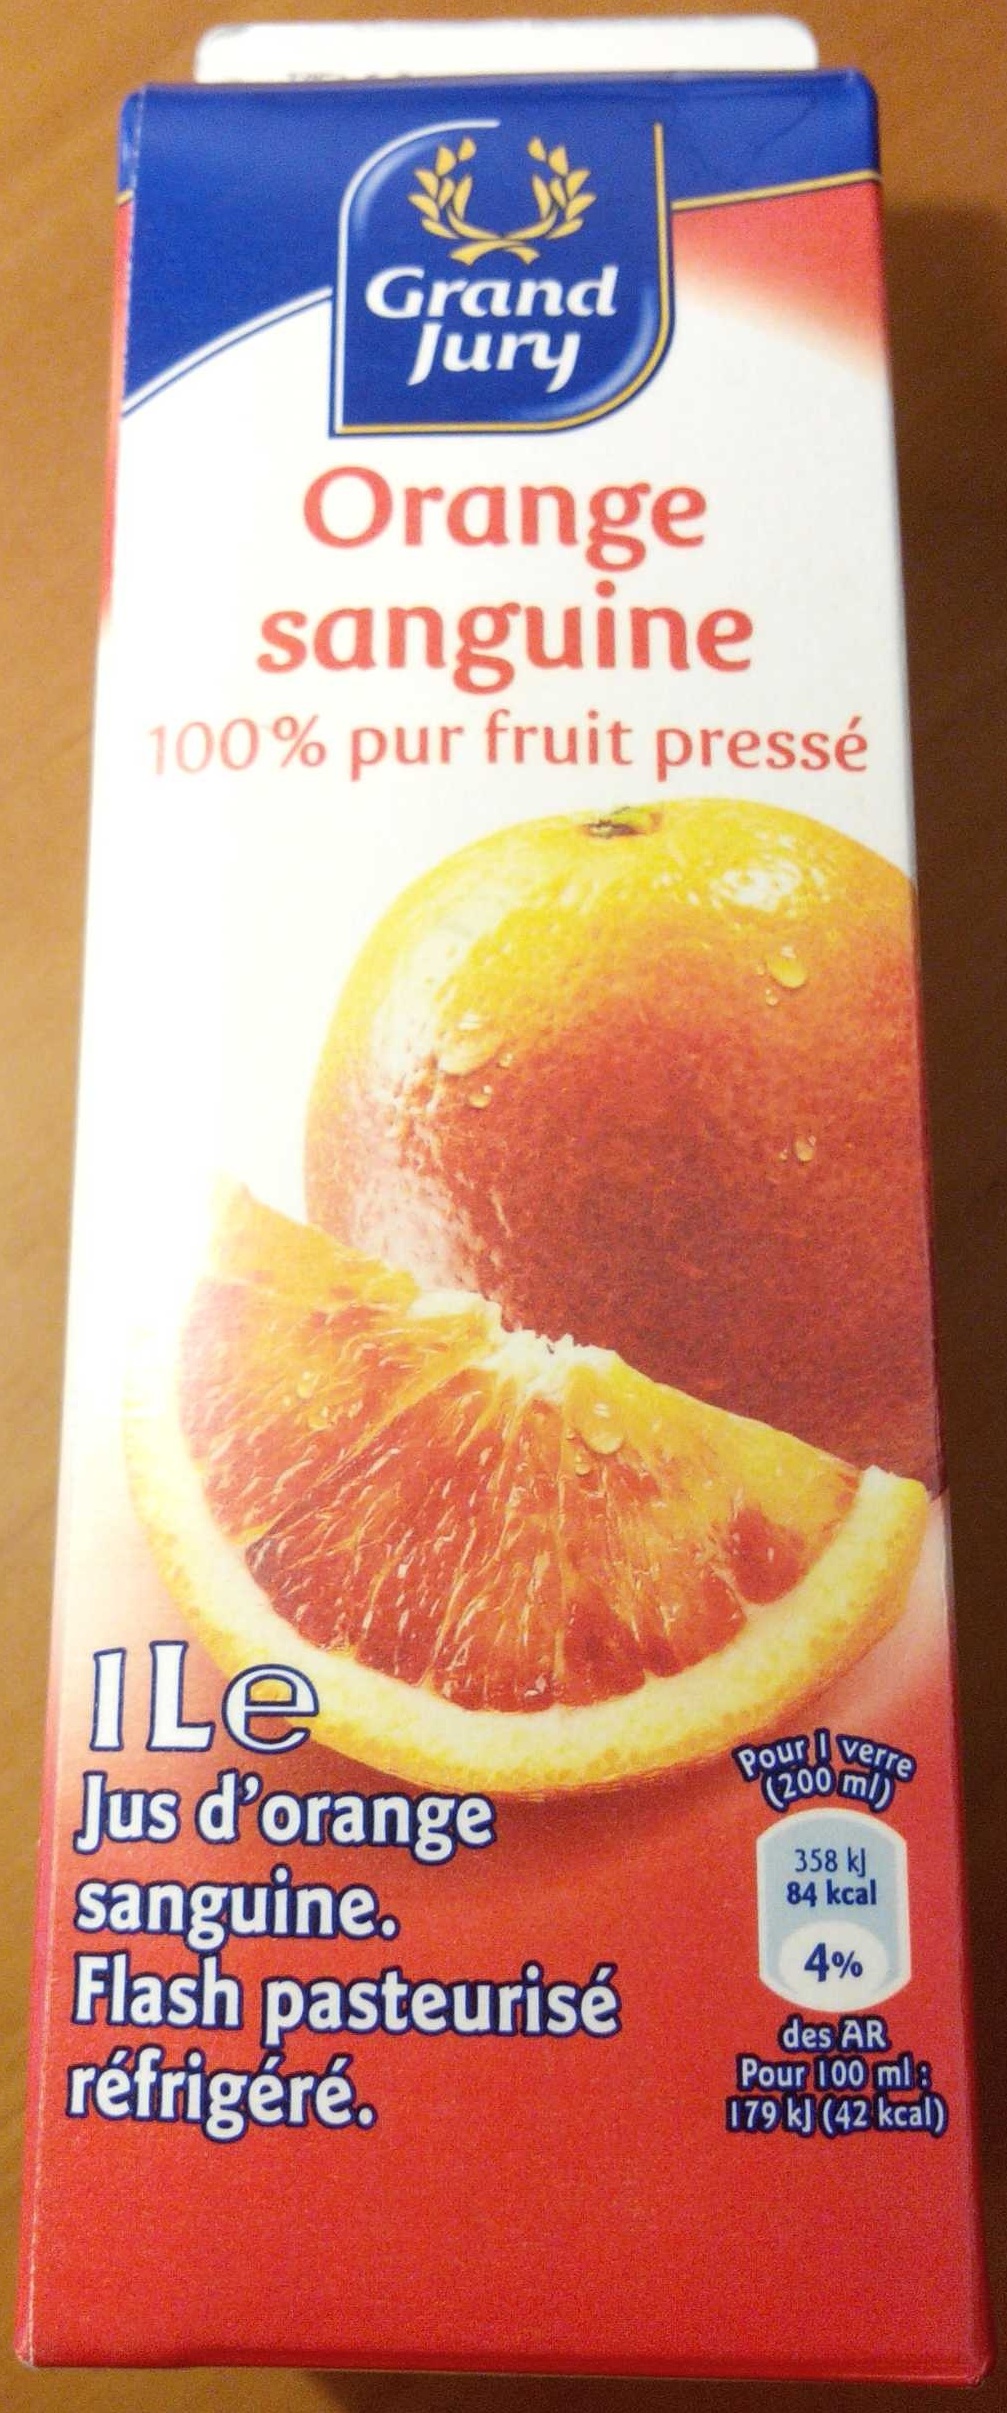 Orange sanguin 100 % pur fruit pressé - Producte - fr